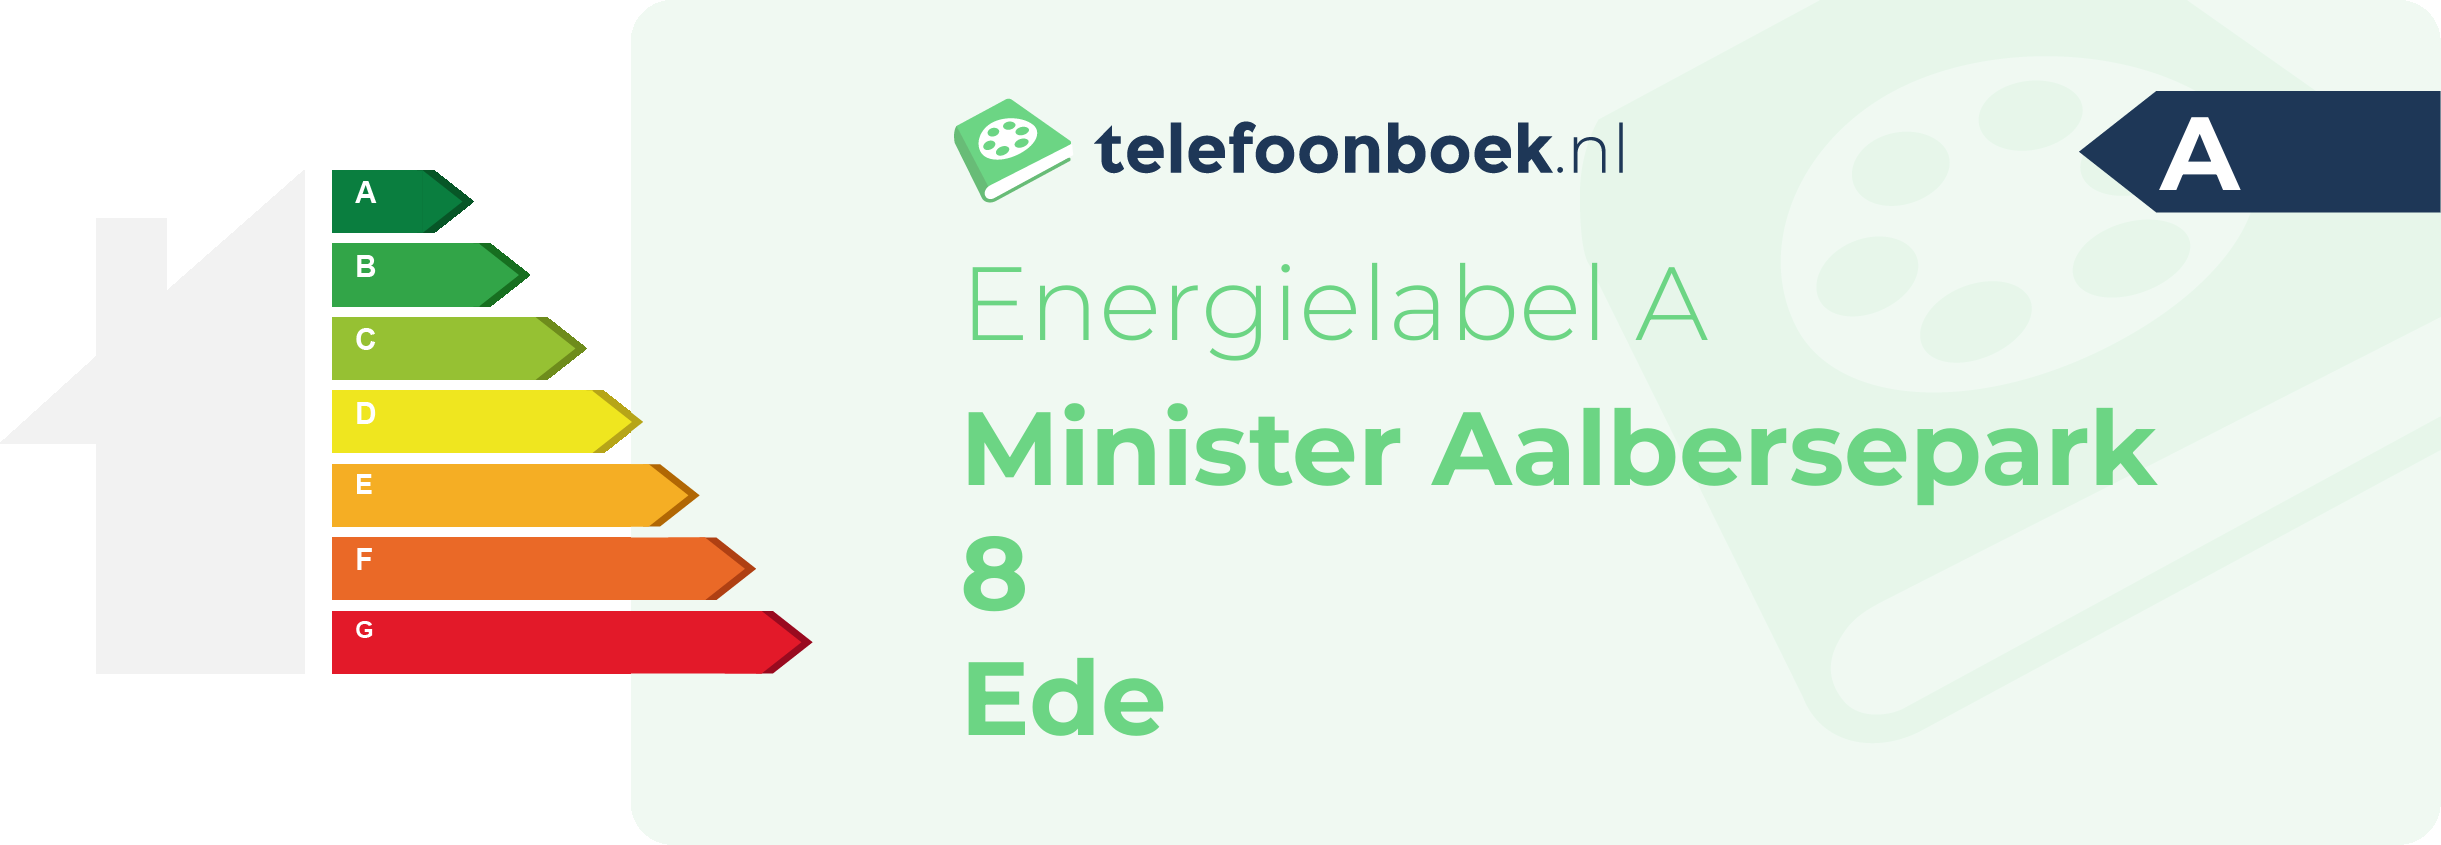 Energielabel Minister Aalbersepark 8 Ede